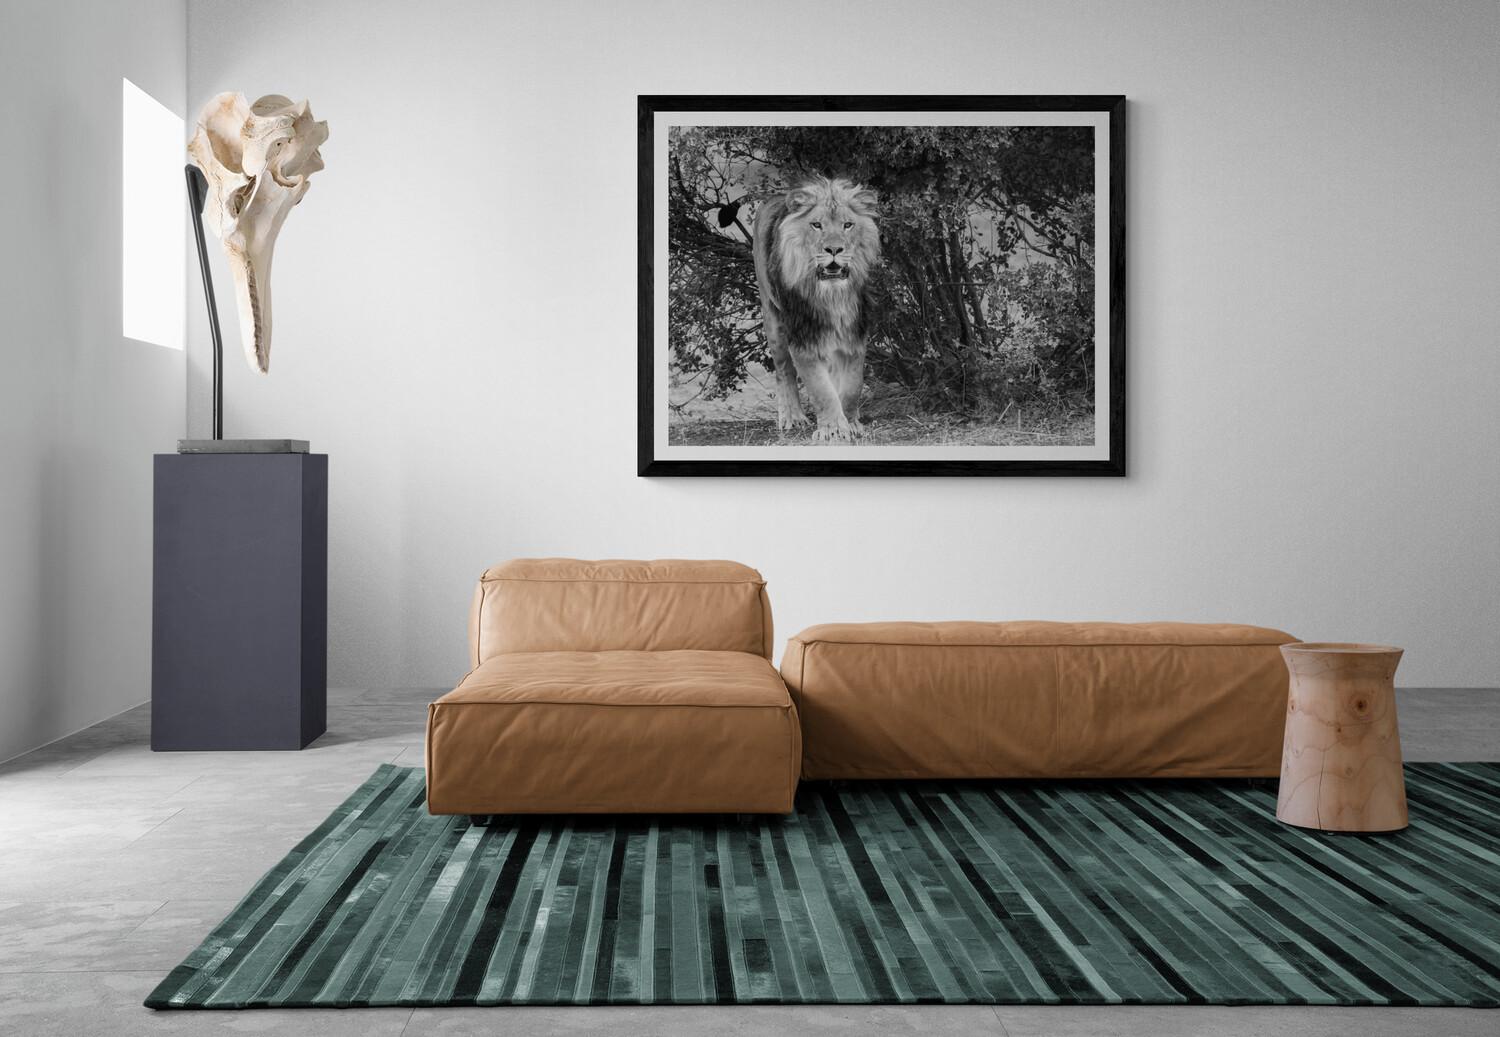 Il s'agit d'une photographie contemporaine d'un lion d'Afrique prise par Shane Russeck.
Non signé
Imprimé sur du papier lustré d'archivage.  

Shane Russeck s'est forgé une réputation en capturant les paysages, les cultures et les animaux en voie de